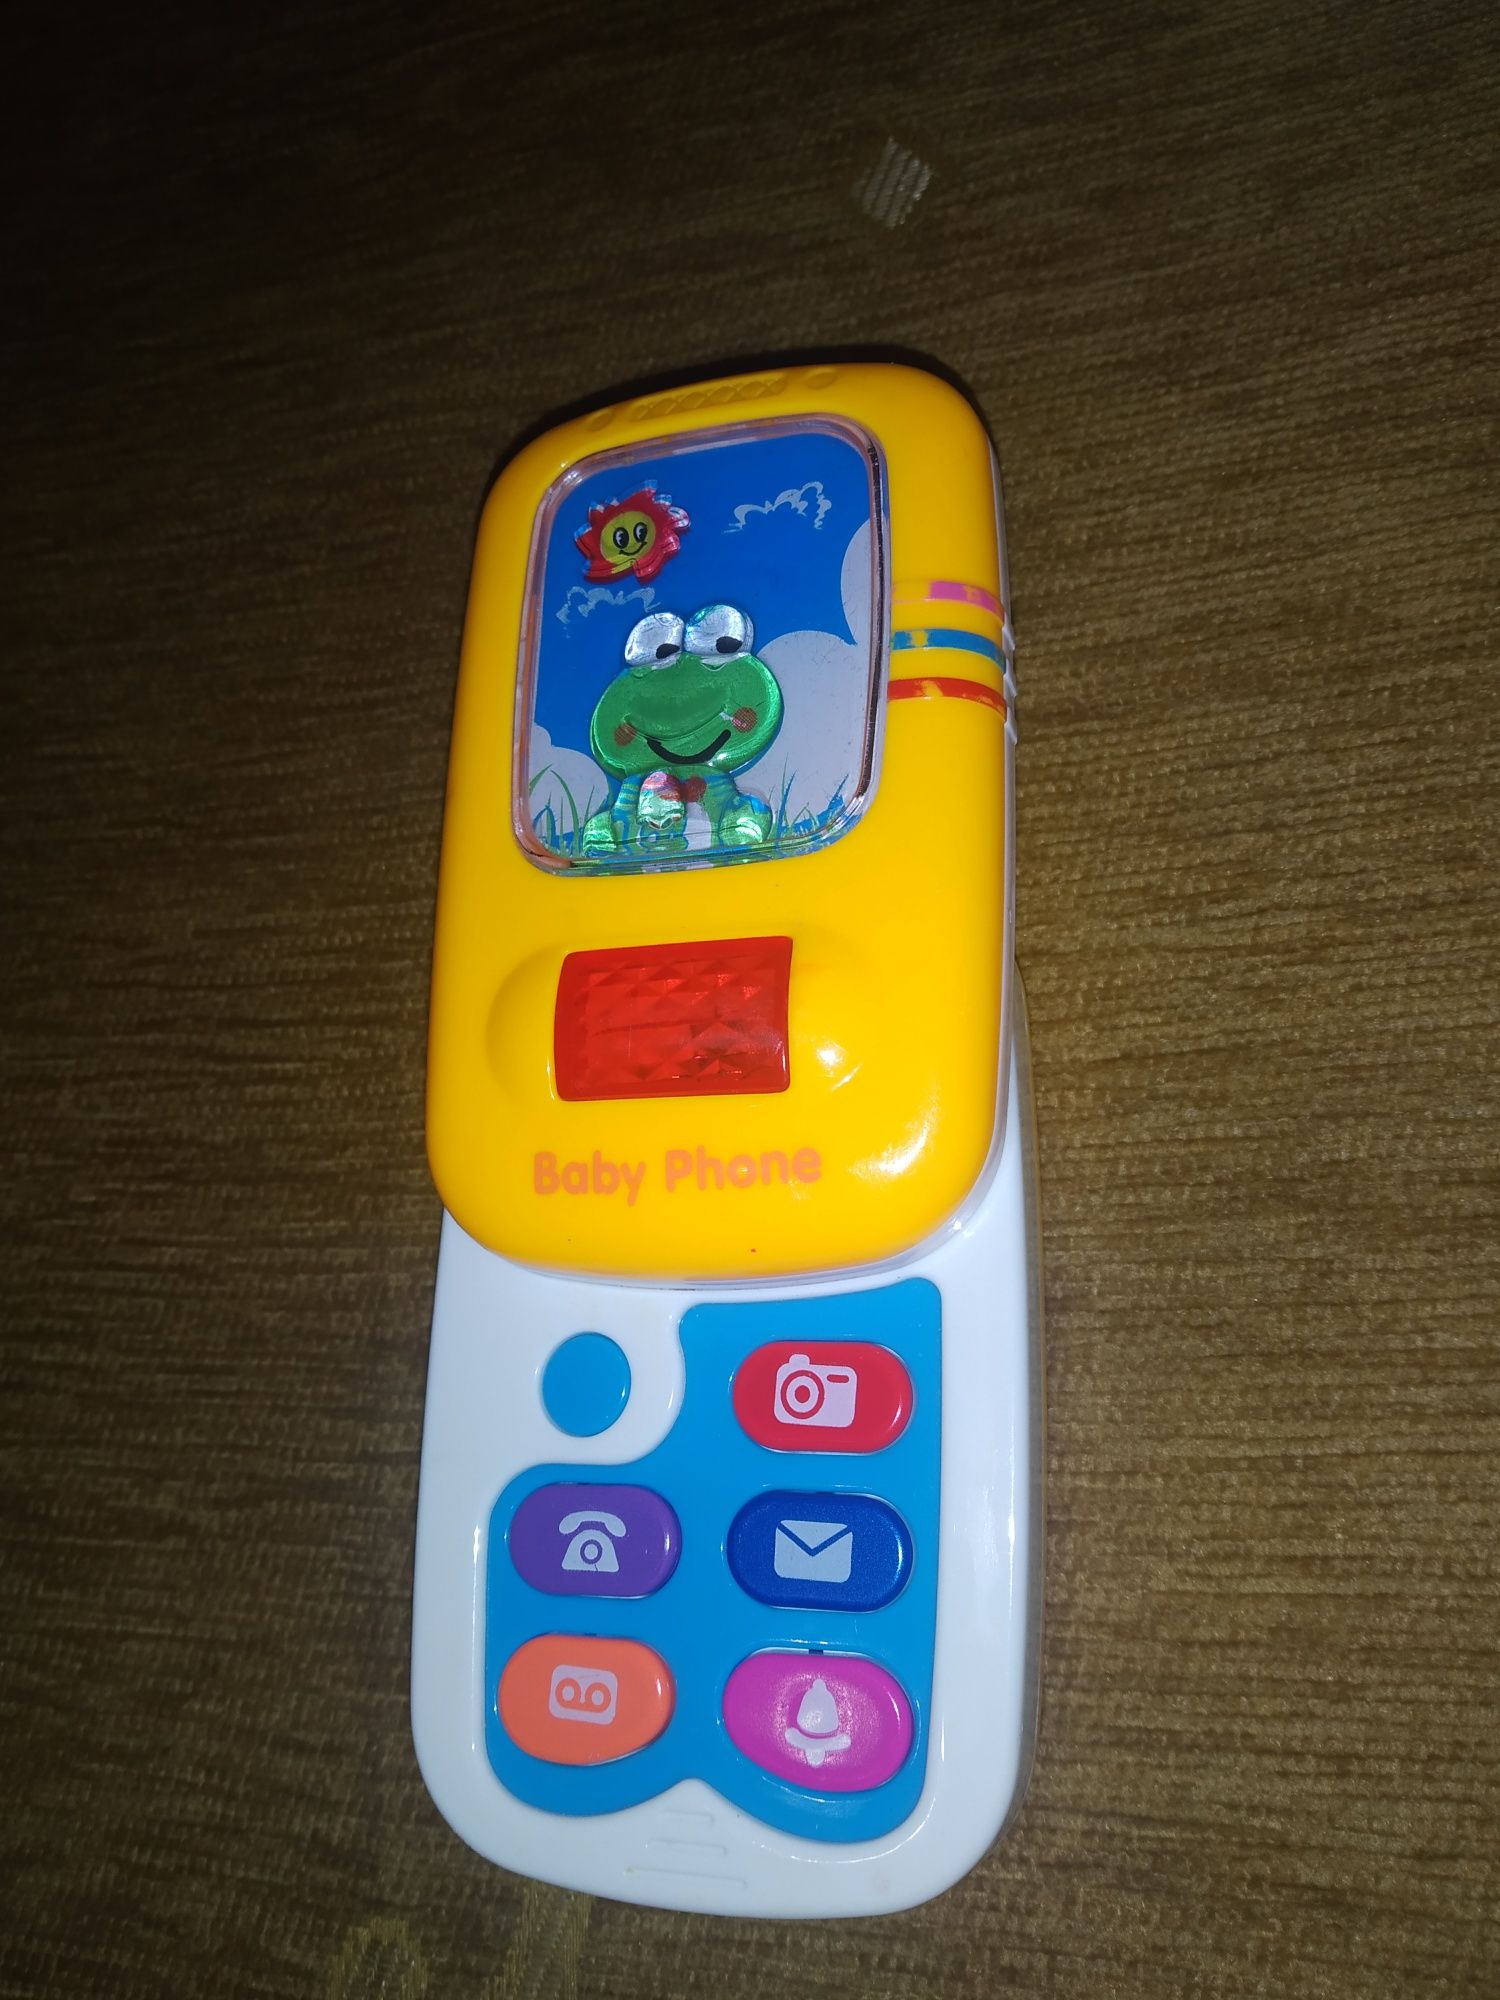 Zabawki dziecięce, Dino, 2 telefony, latarenka